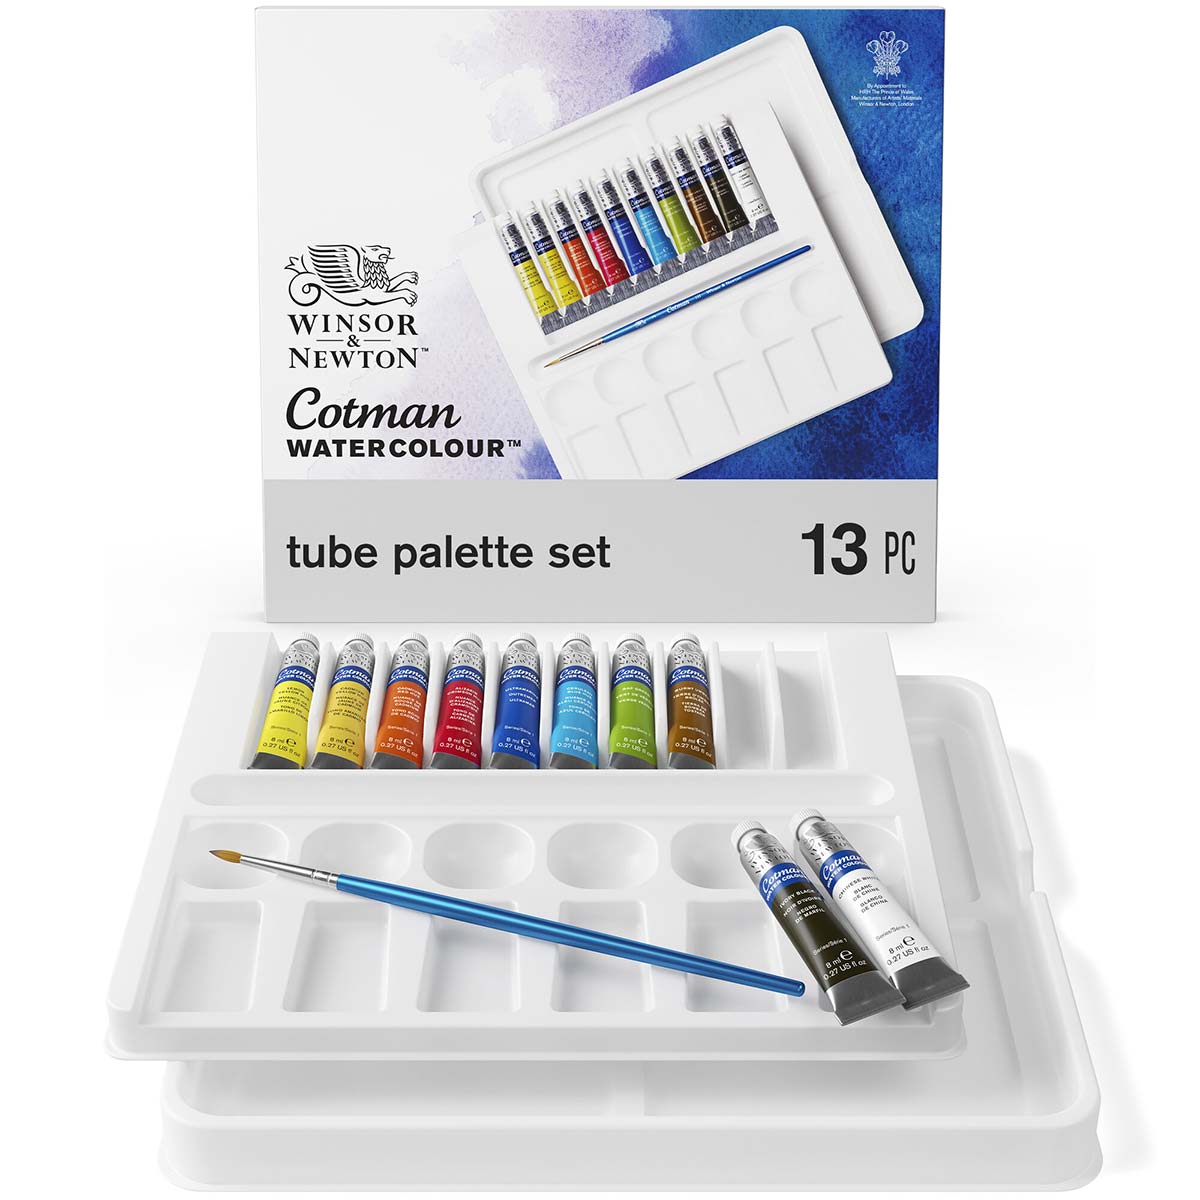 Winsor and Newton - Cotman Watercolour - Palette Set